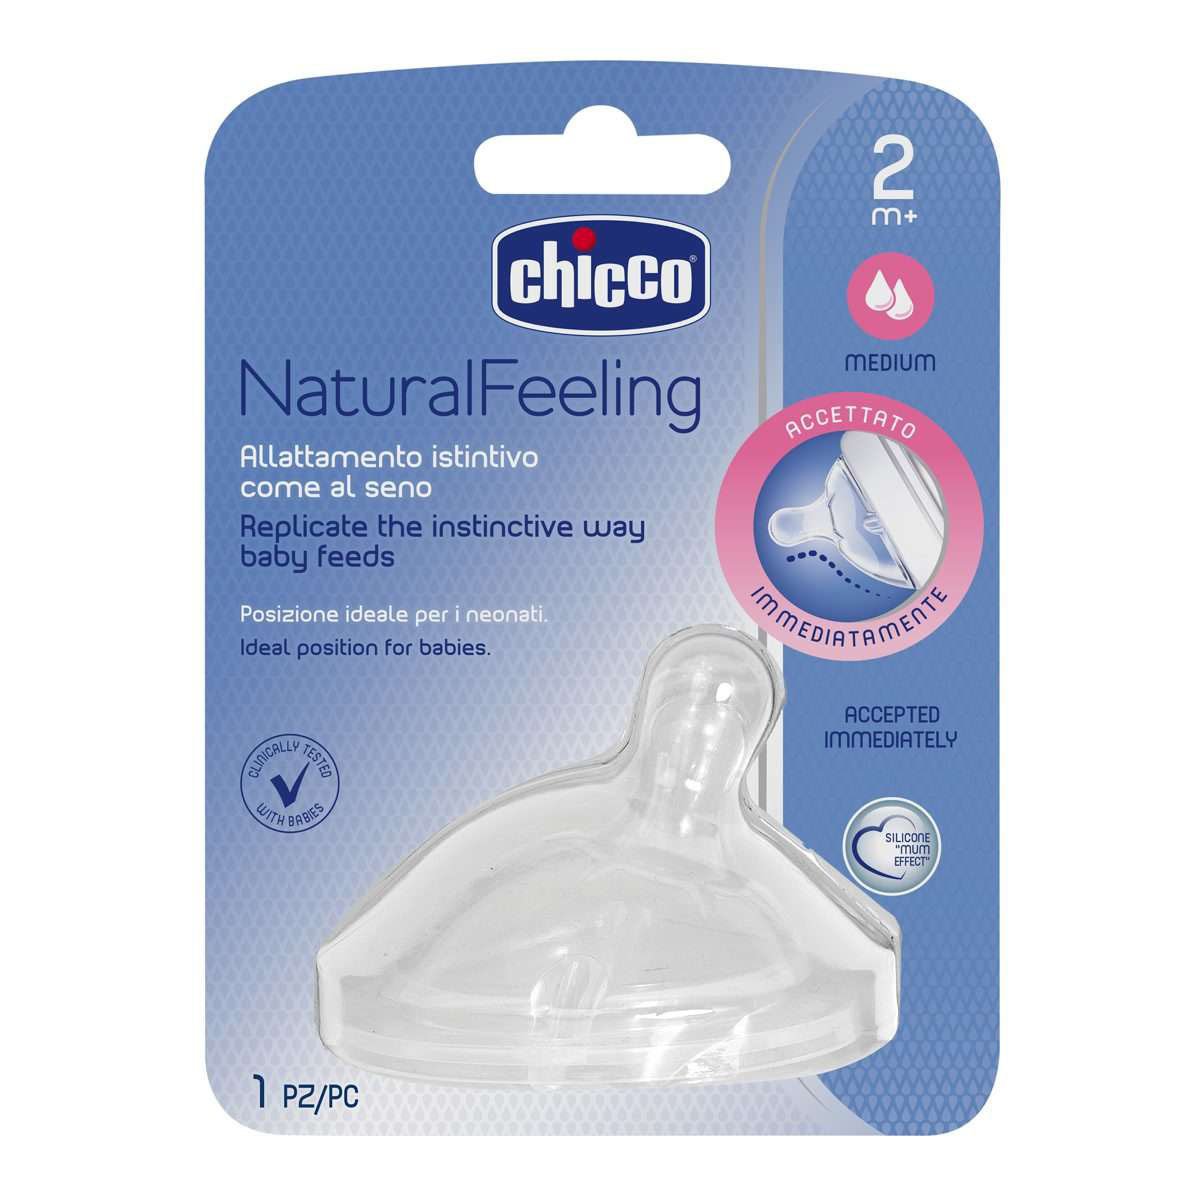 Соска силиконовая Chicco Natural Feeling, средний поток, 2м+, 1 шт. (81023.10) - фото 2